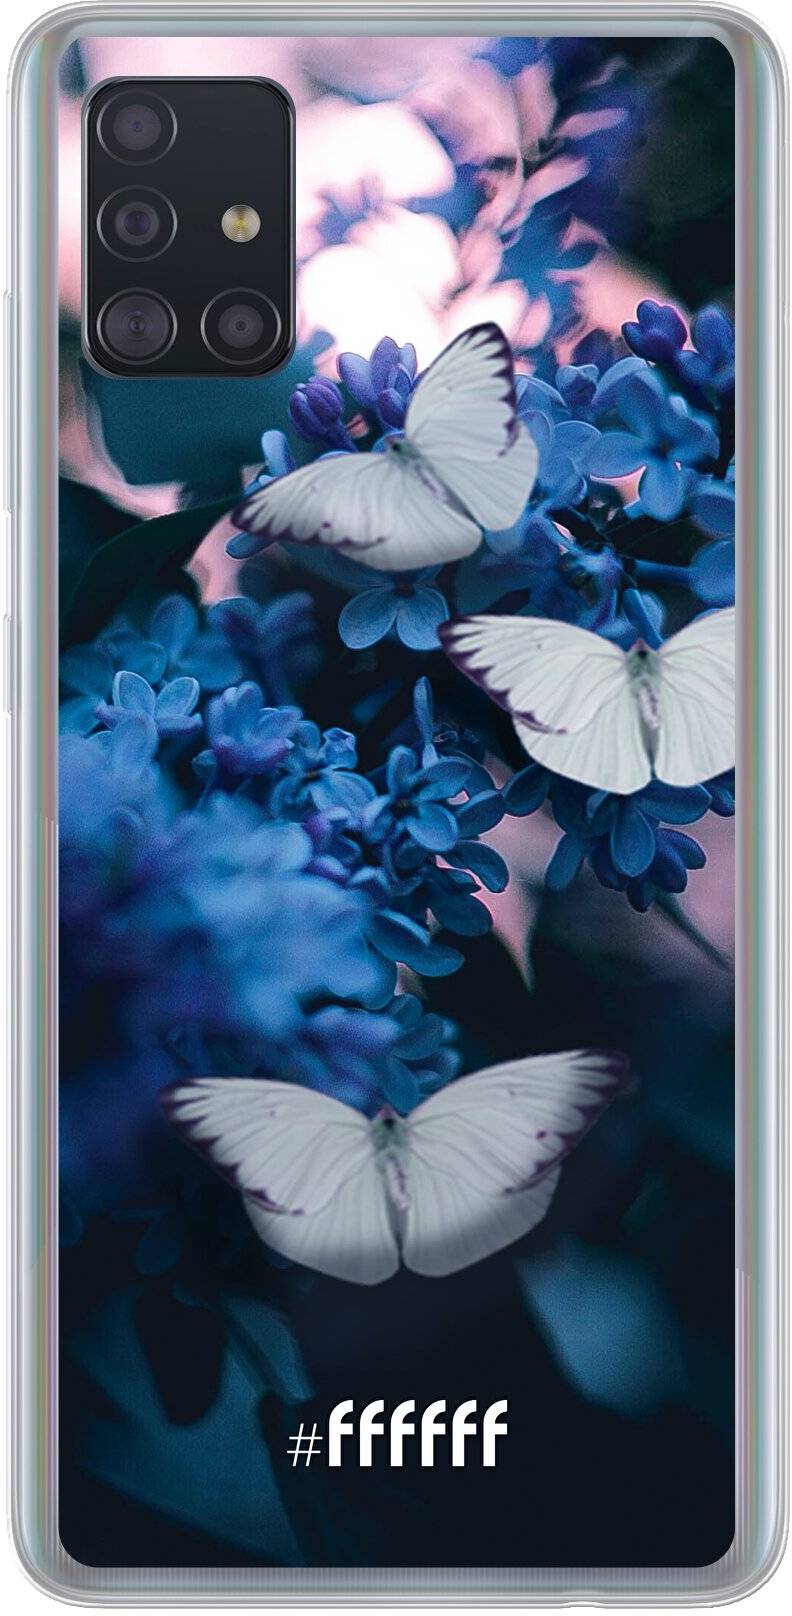 Blooming Butterflies Galaxy A51